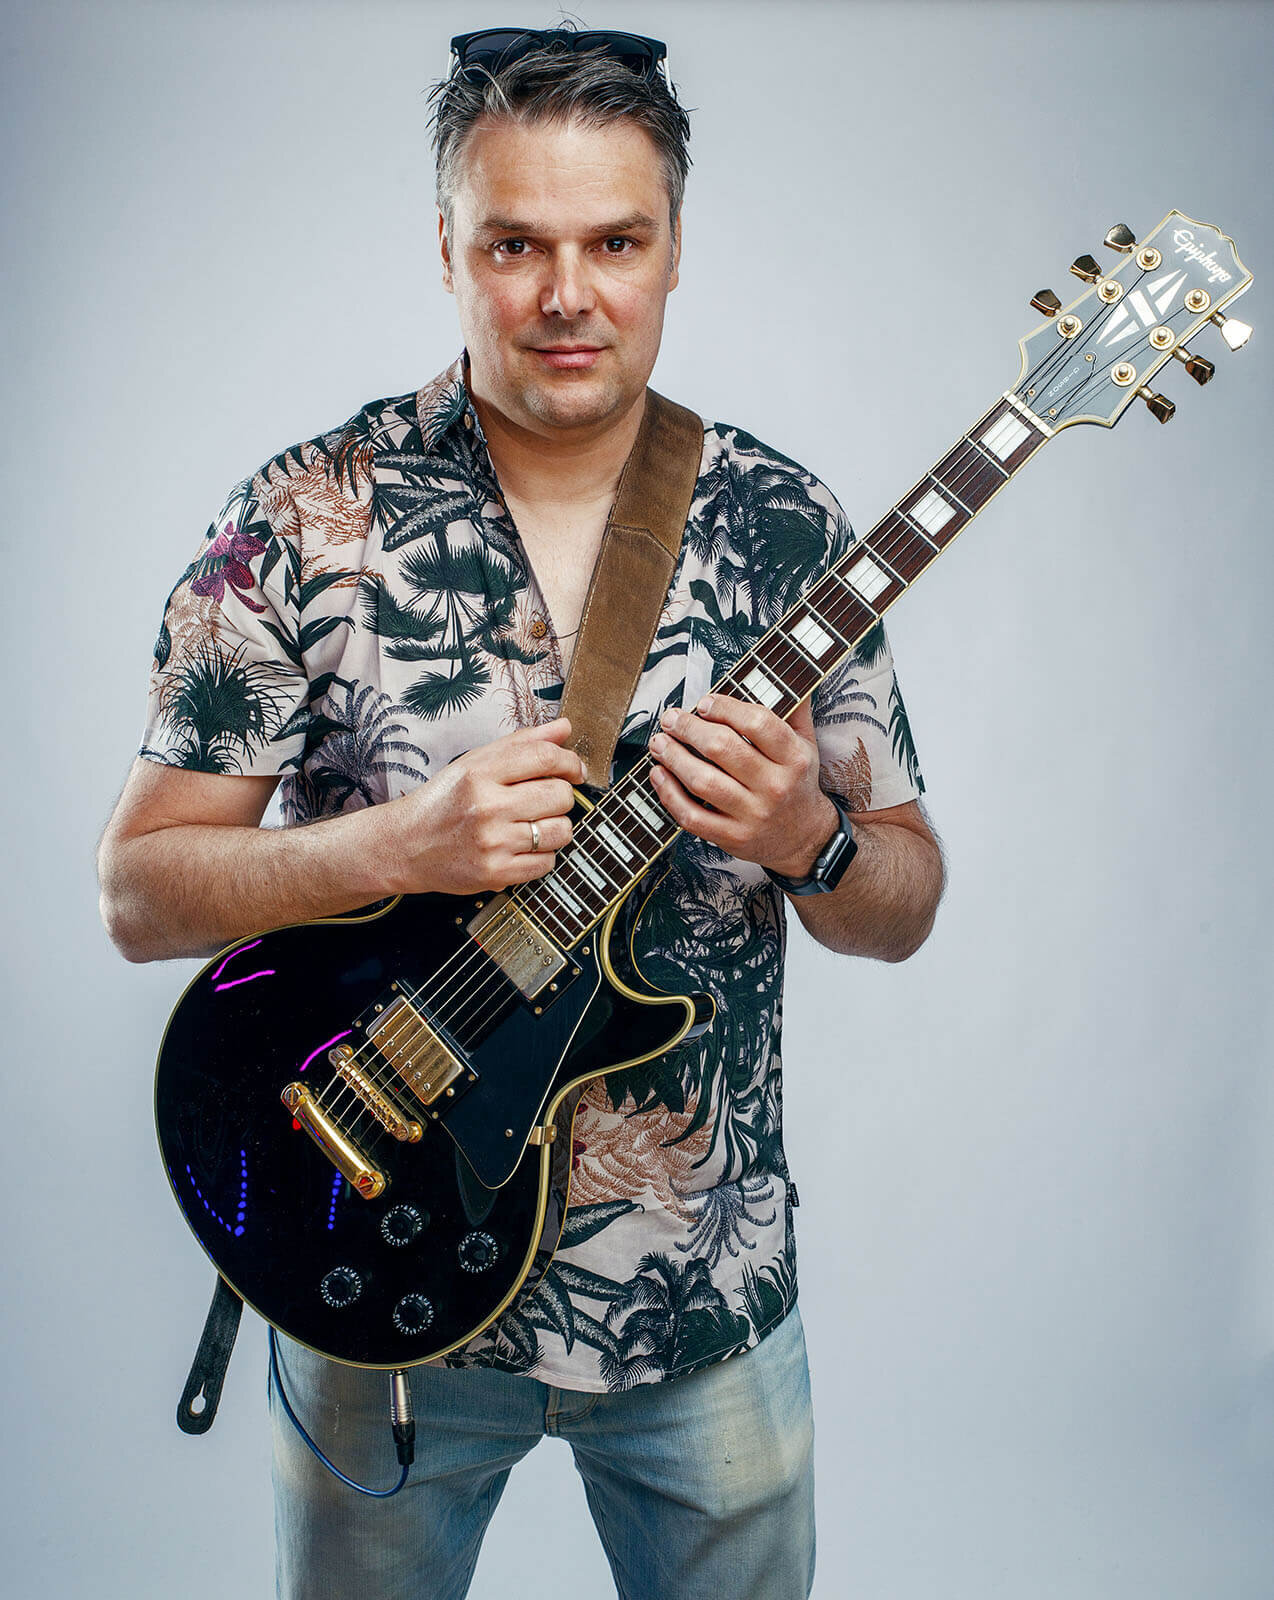 Vincent-Koning-gitarist-Guitarist-Funky-Vince.jpg